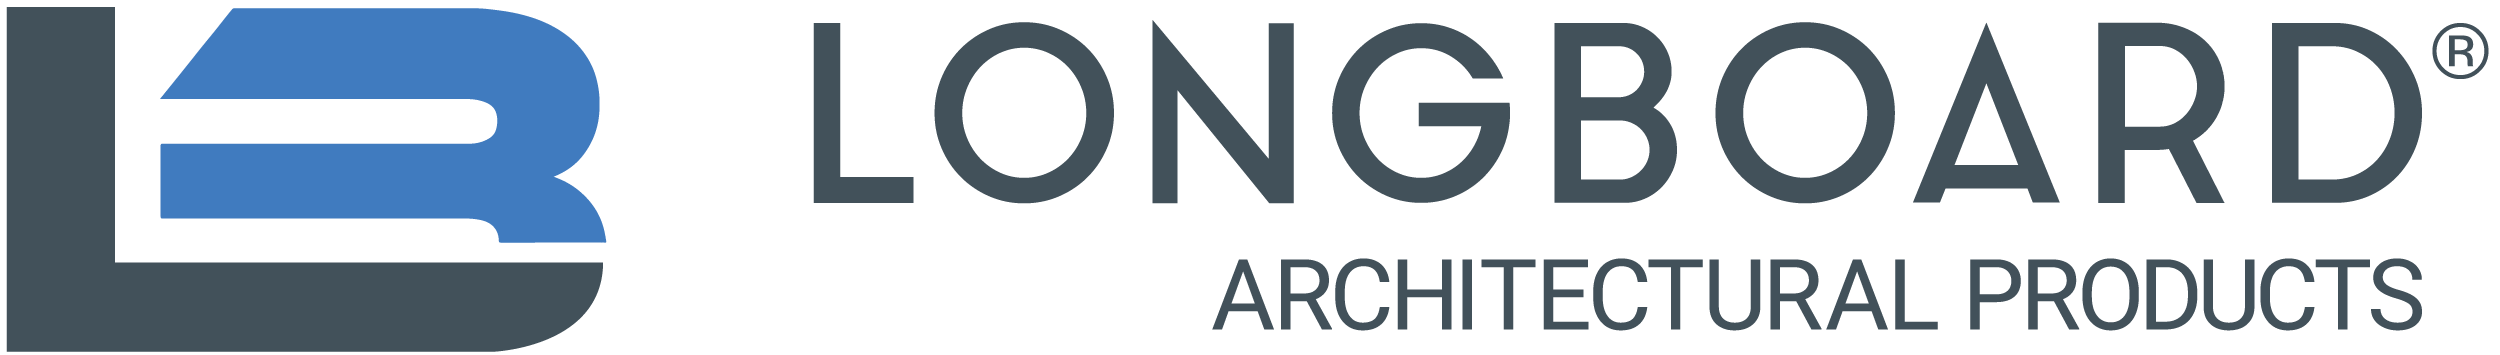 Longboard logo